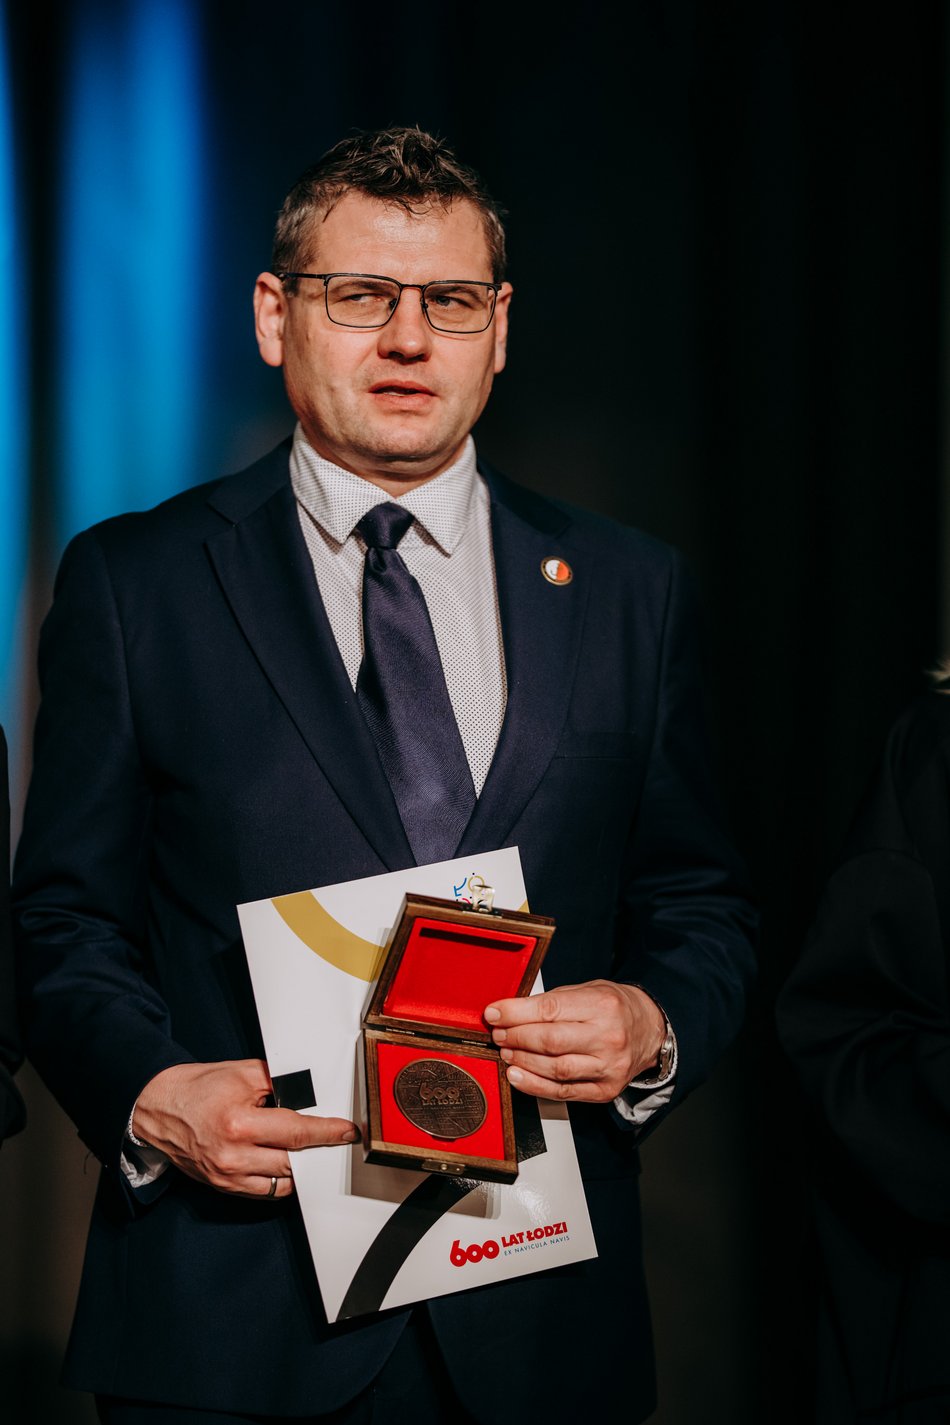 Medale z okazji 600. Urodzin Łodzi